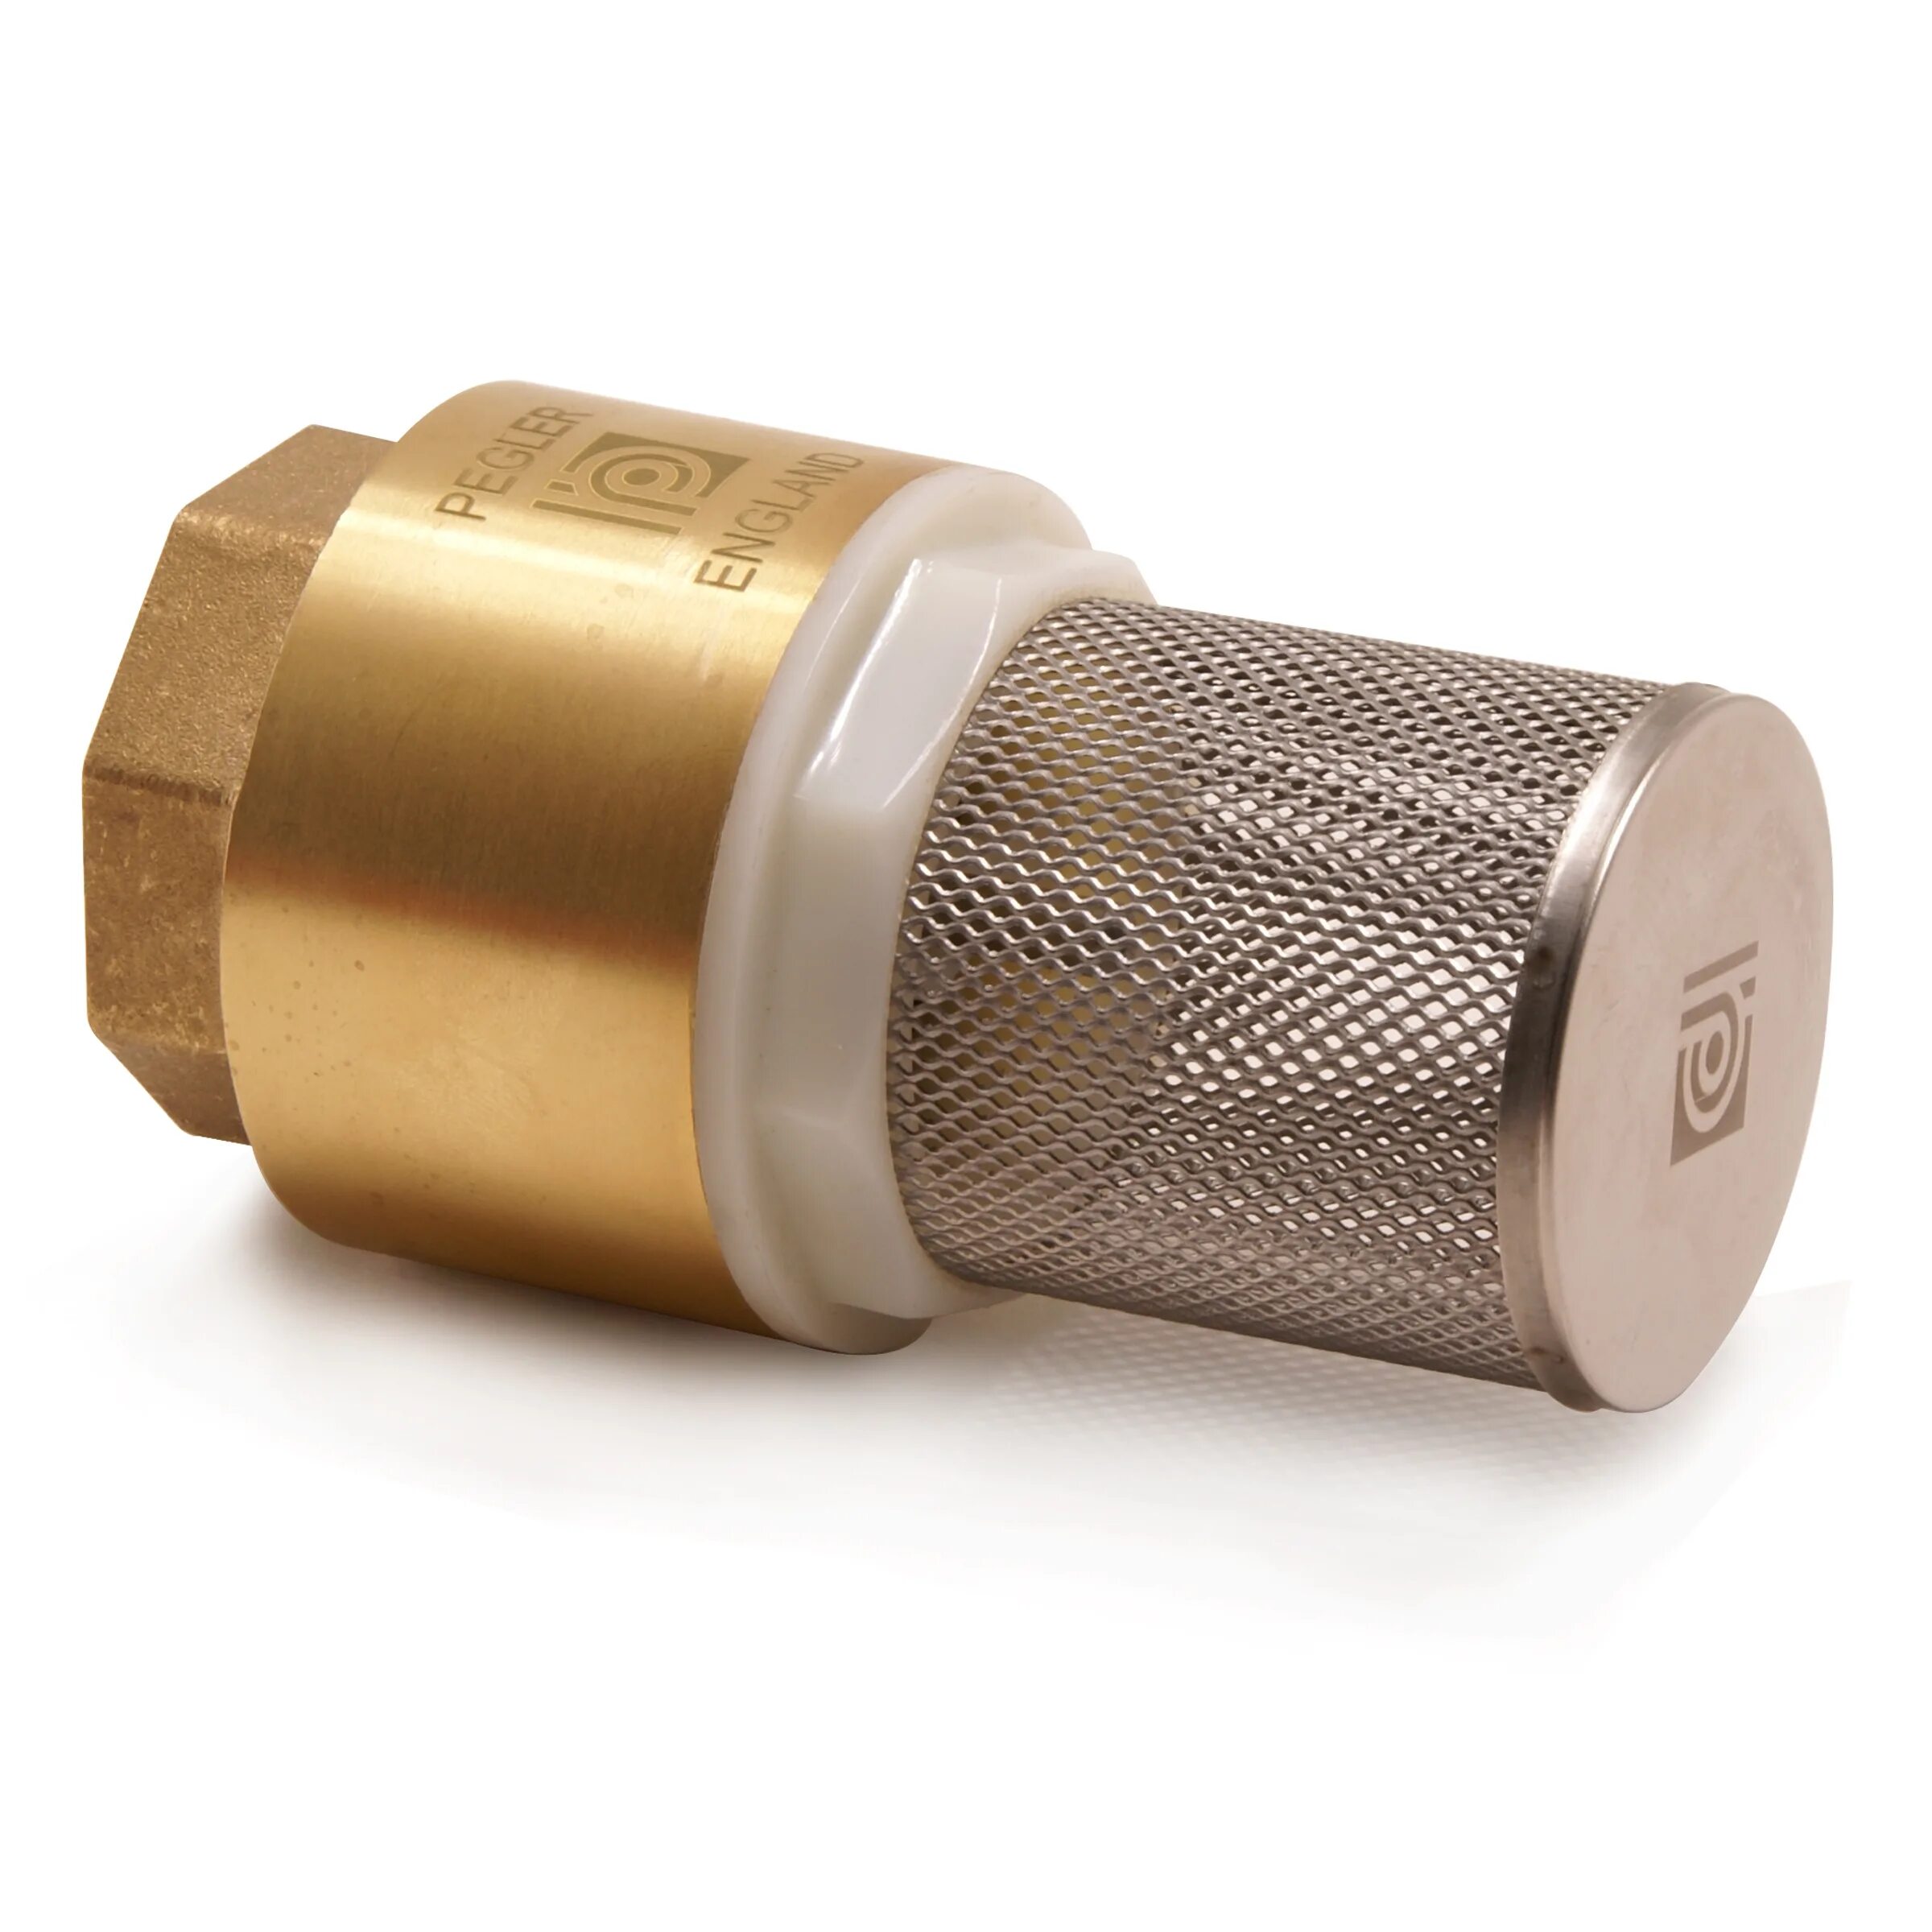 Сетчатый клапан. - Клапан с сетчатым фильтром (1хz261). Латунный обратный клапан PN 16. Обратный клапан с сетчатым фильтром на 1 дюйм. Фильтр сетчатый с клапаном.